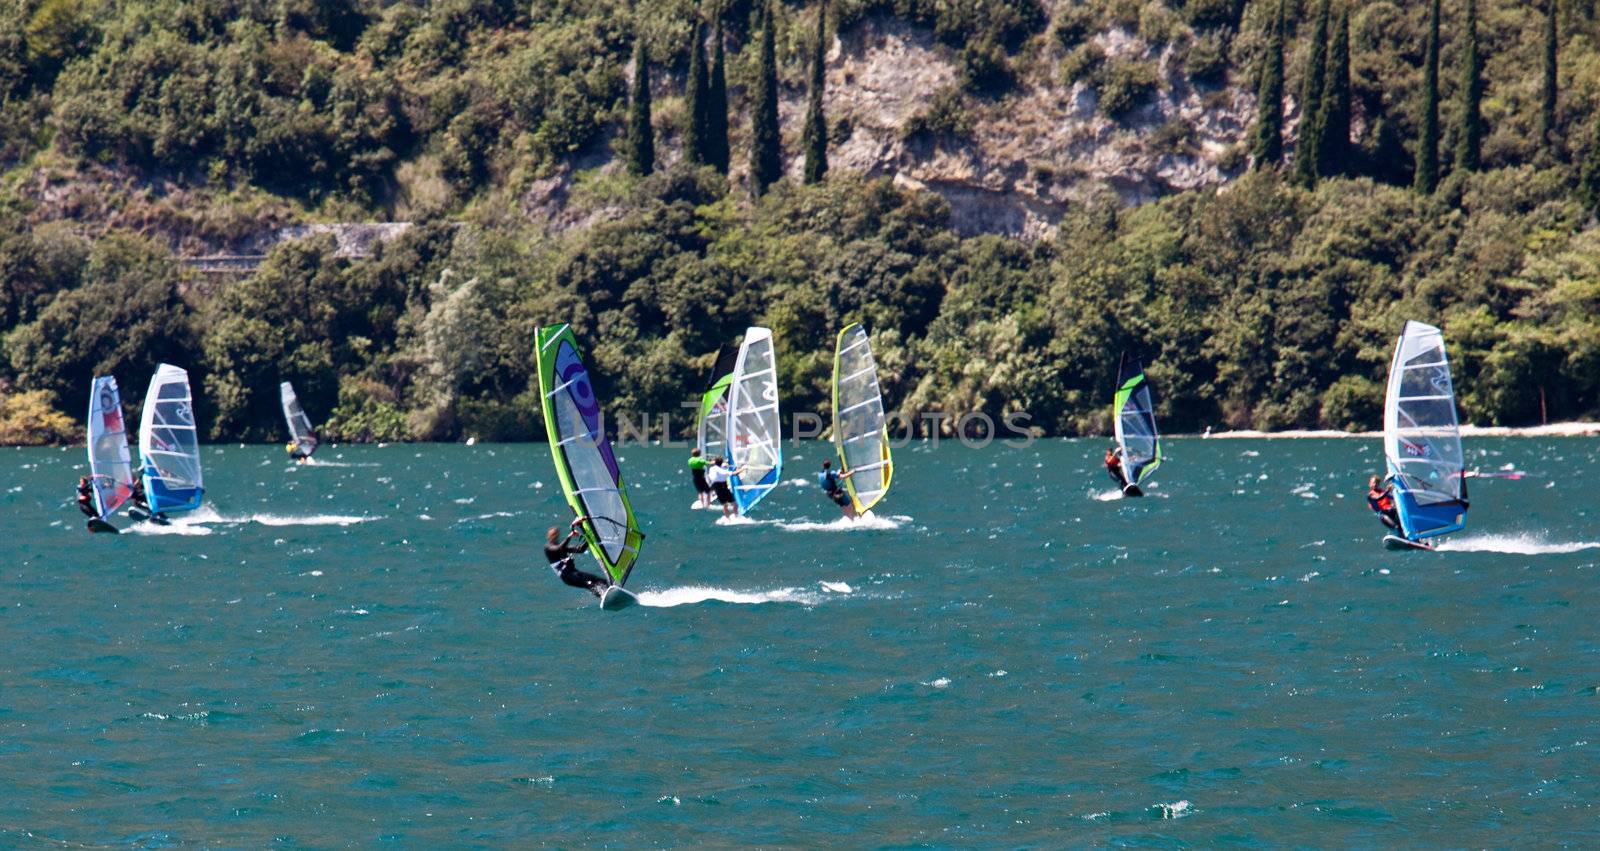 Windsurfing on Lake Garda by steheap